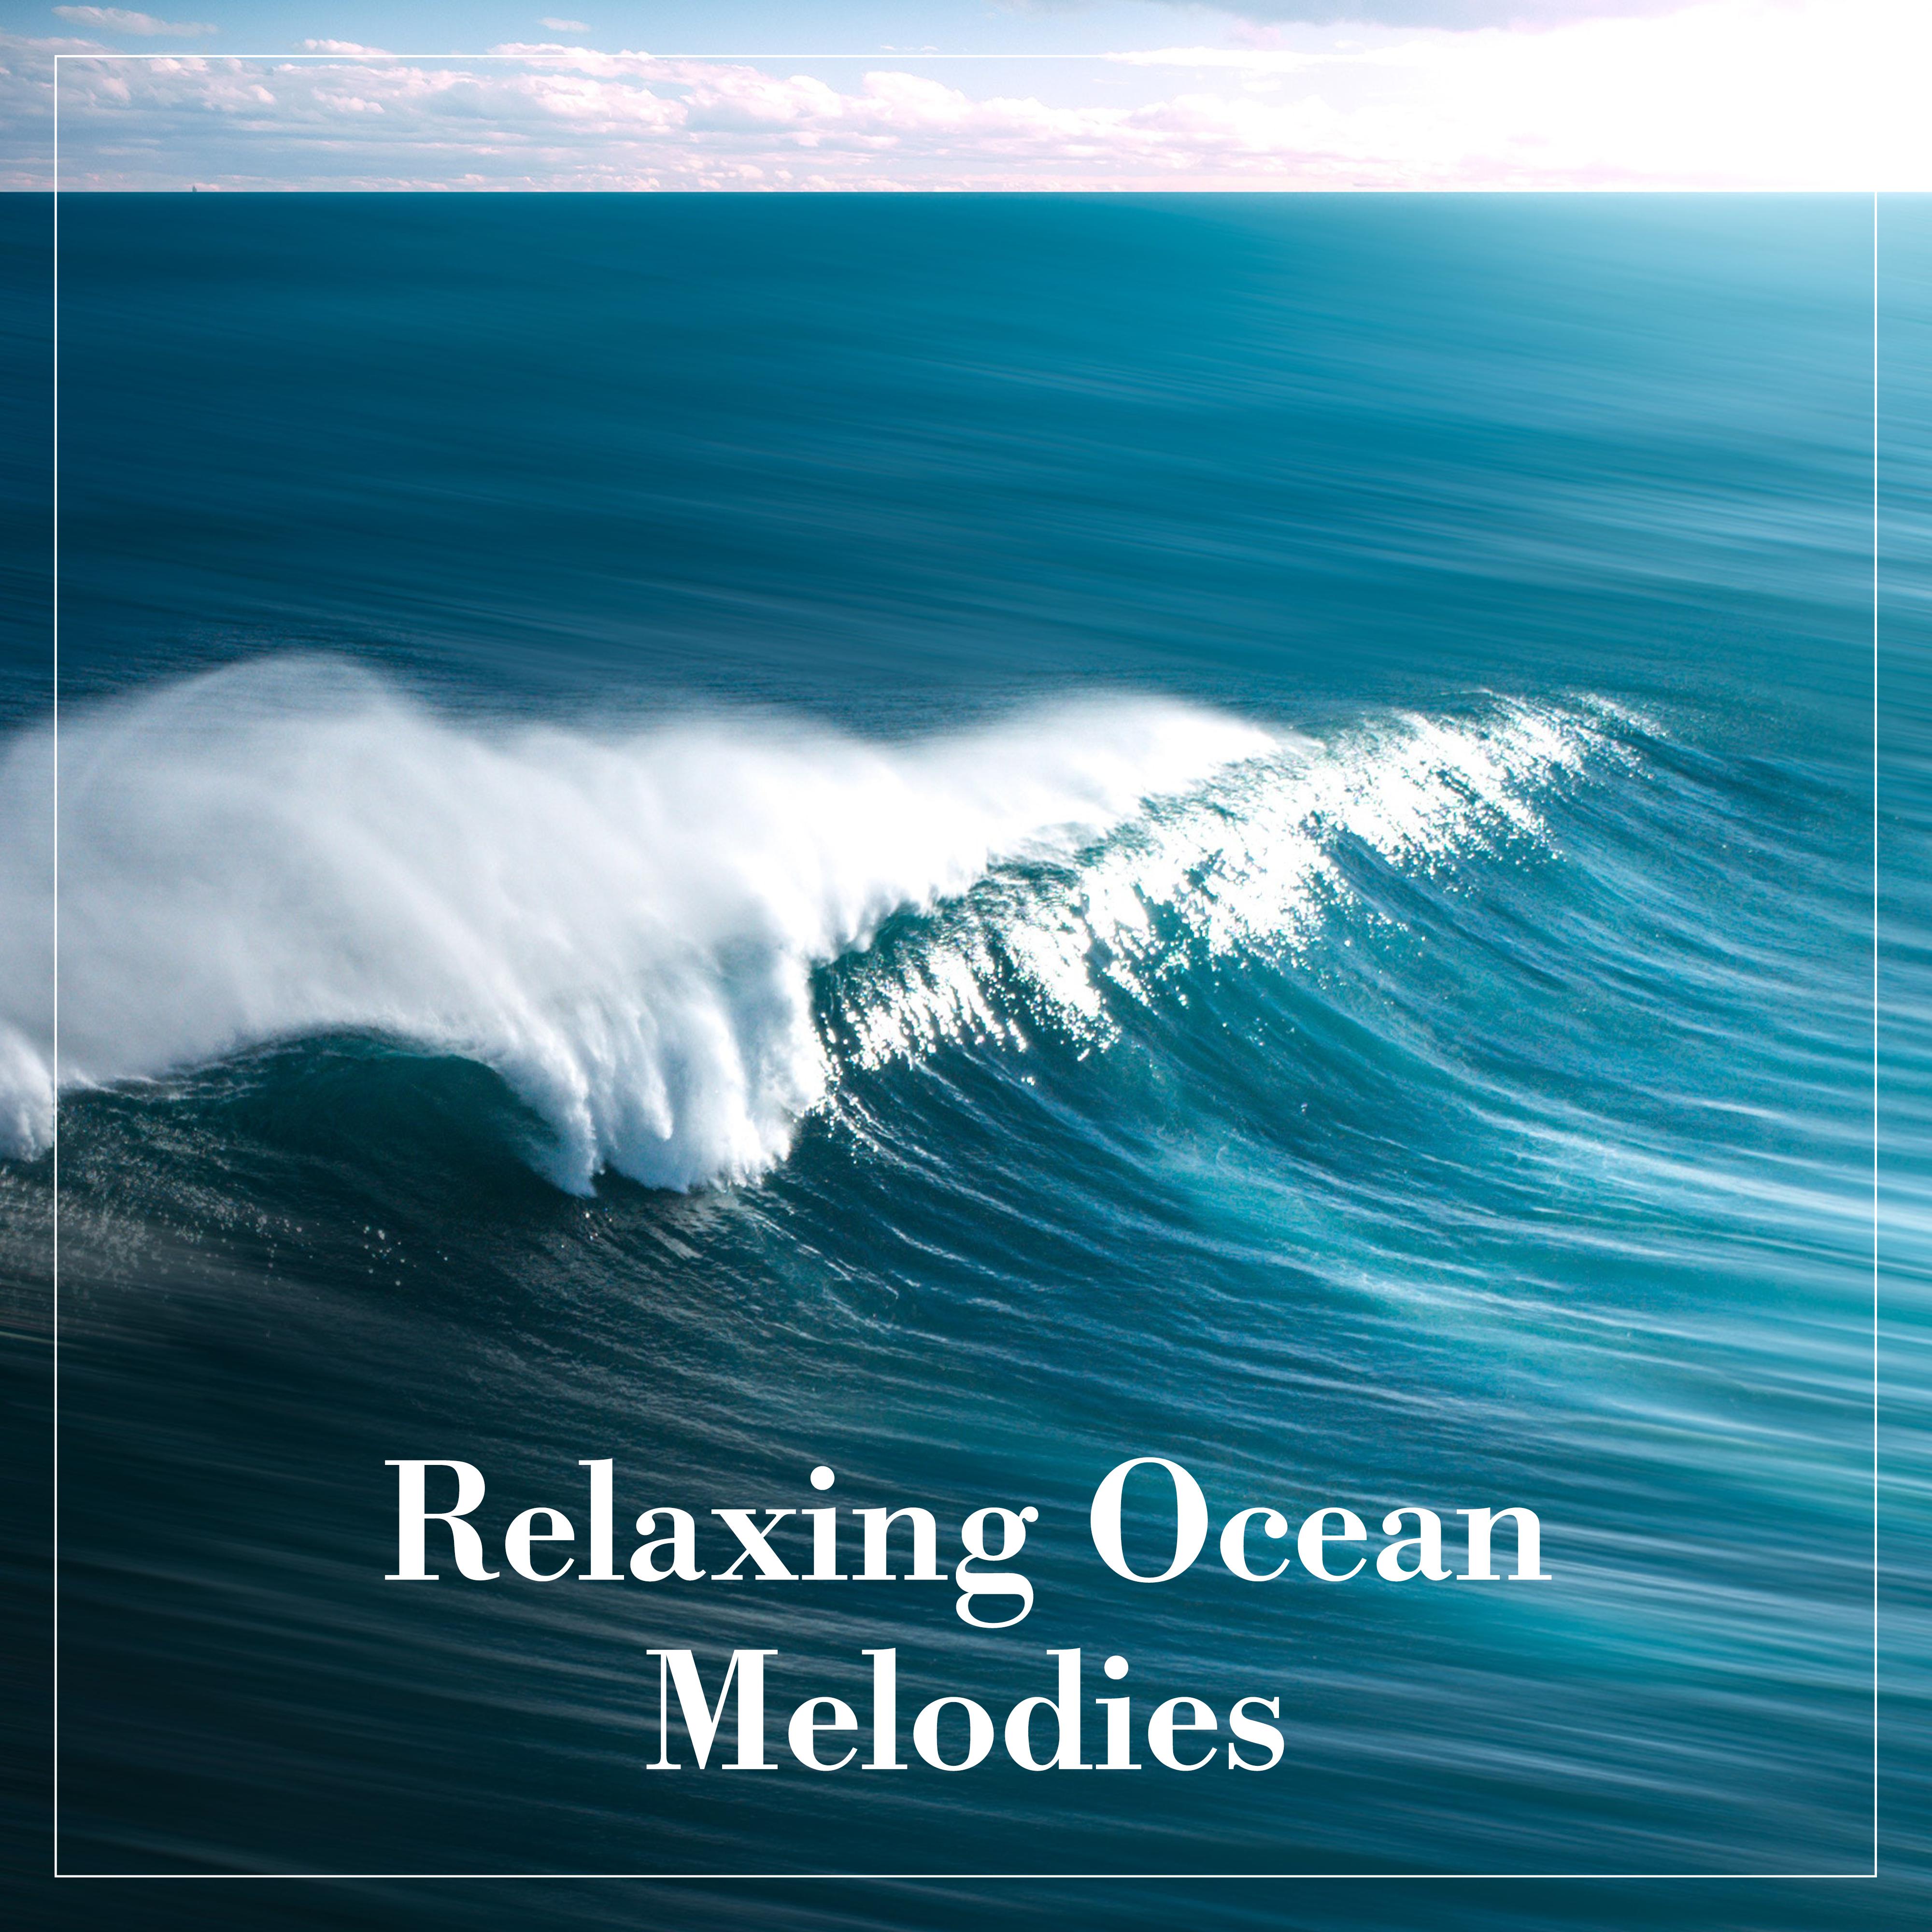 Relaxing Ocean Melodies: Ocean Sounds 2019, Zen, Lounge, Relaxing Waves to Rest